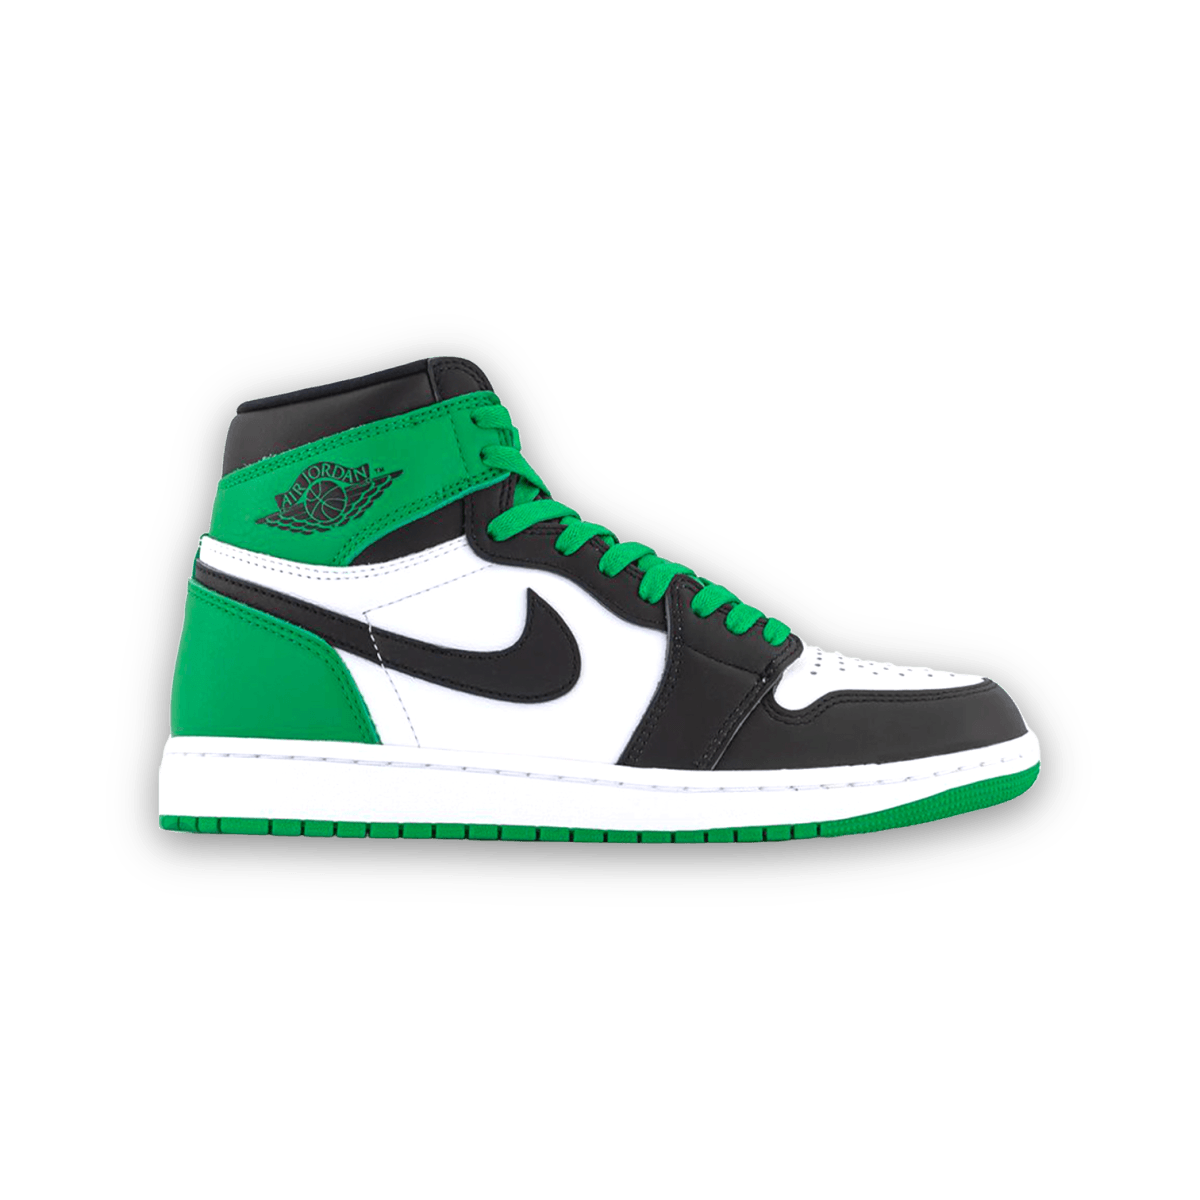 Air Jordan 1 High OG Lucky Green - High Sneaker - Jordan - Jawns on Fire - sneakers